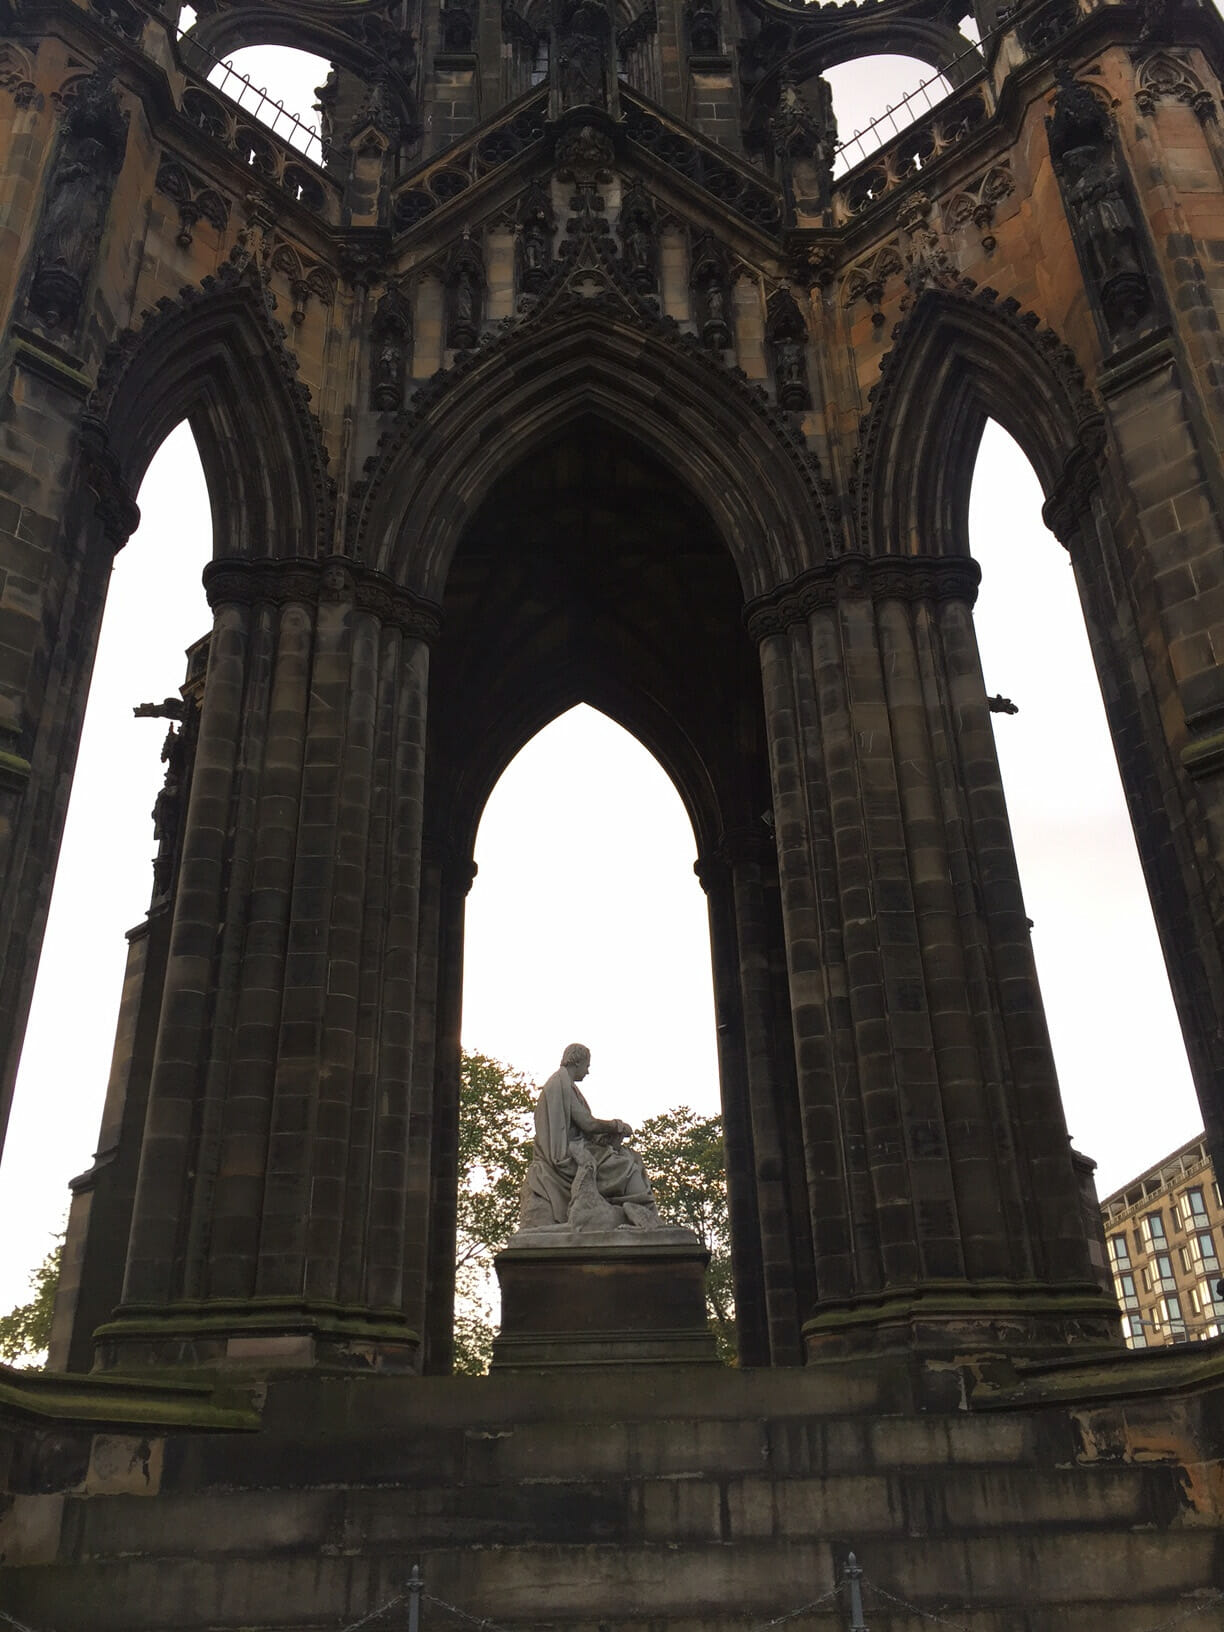 Los arcos en estilo gótico victoriano con una estatua en medio del Monumento a Scott en Edimburgo